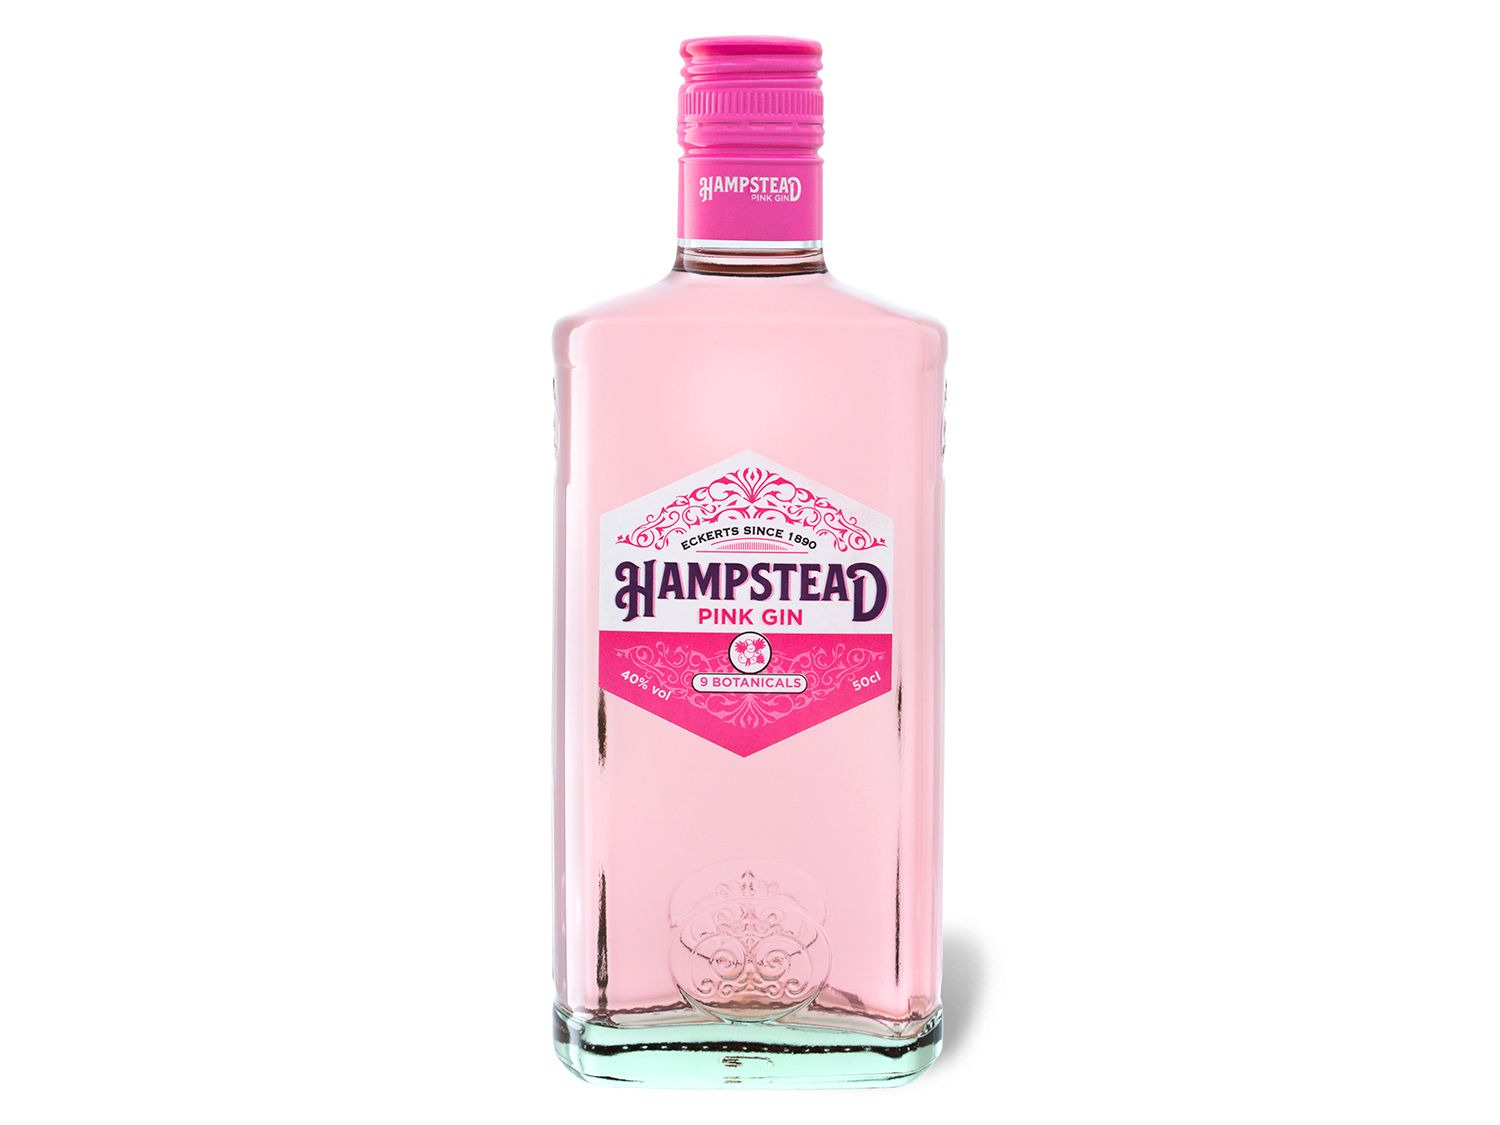 Hampstead Pink Gin 40% Vol online kaufen | LIDL